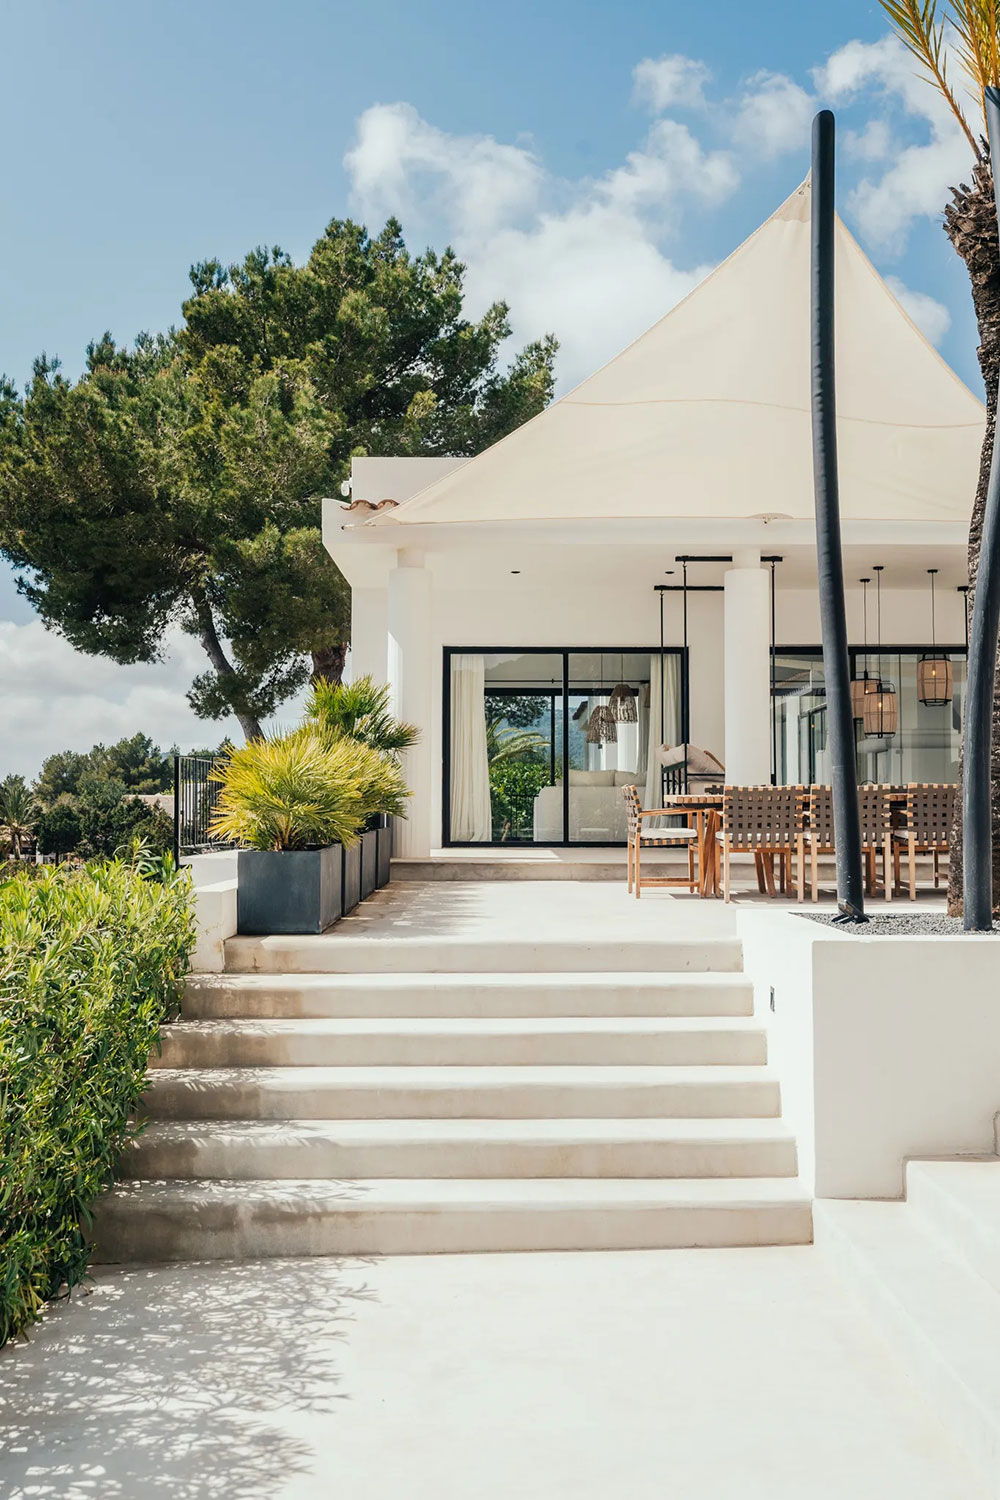 Modern Ibiza traditional Ideas ◾ ◾ Design Photos take finca on 〛◾ in